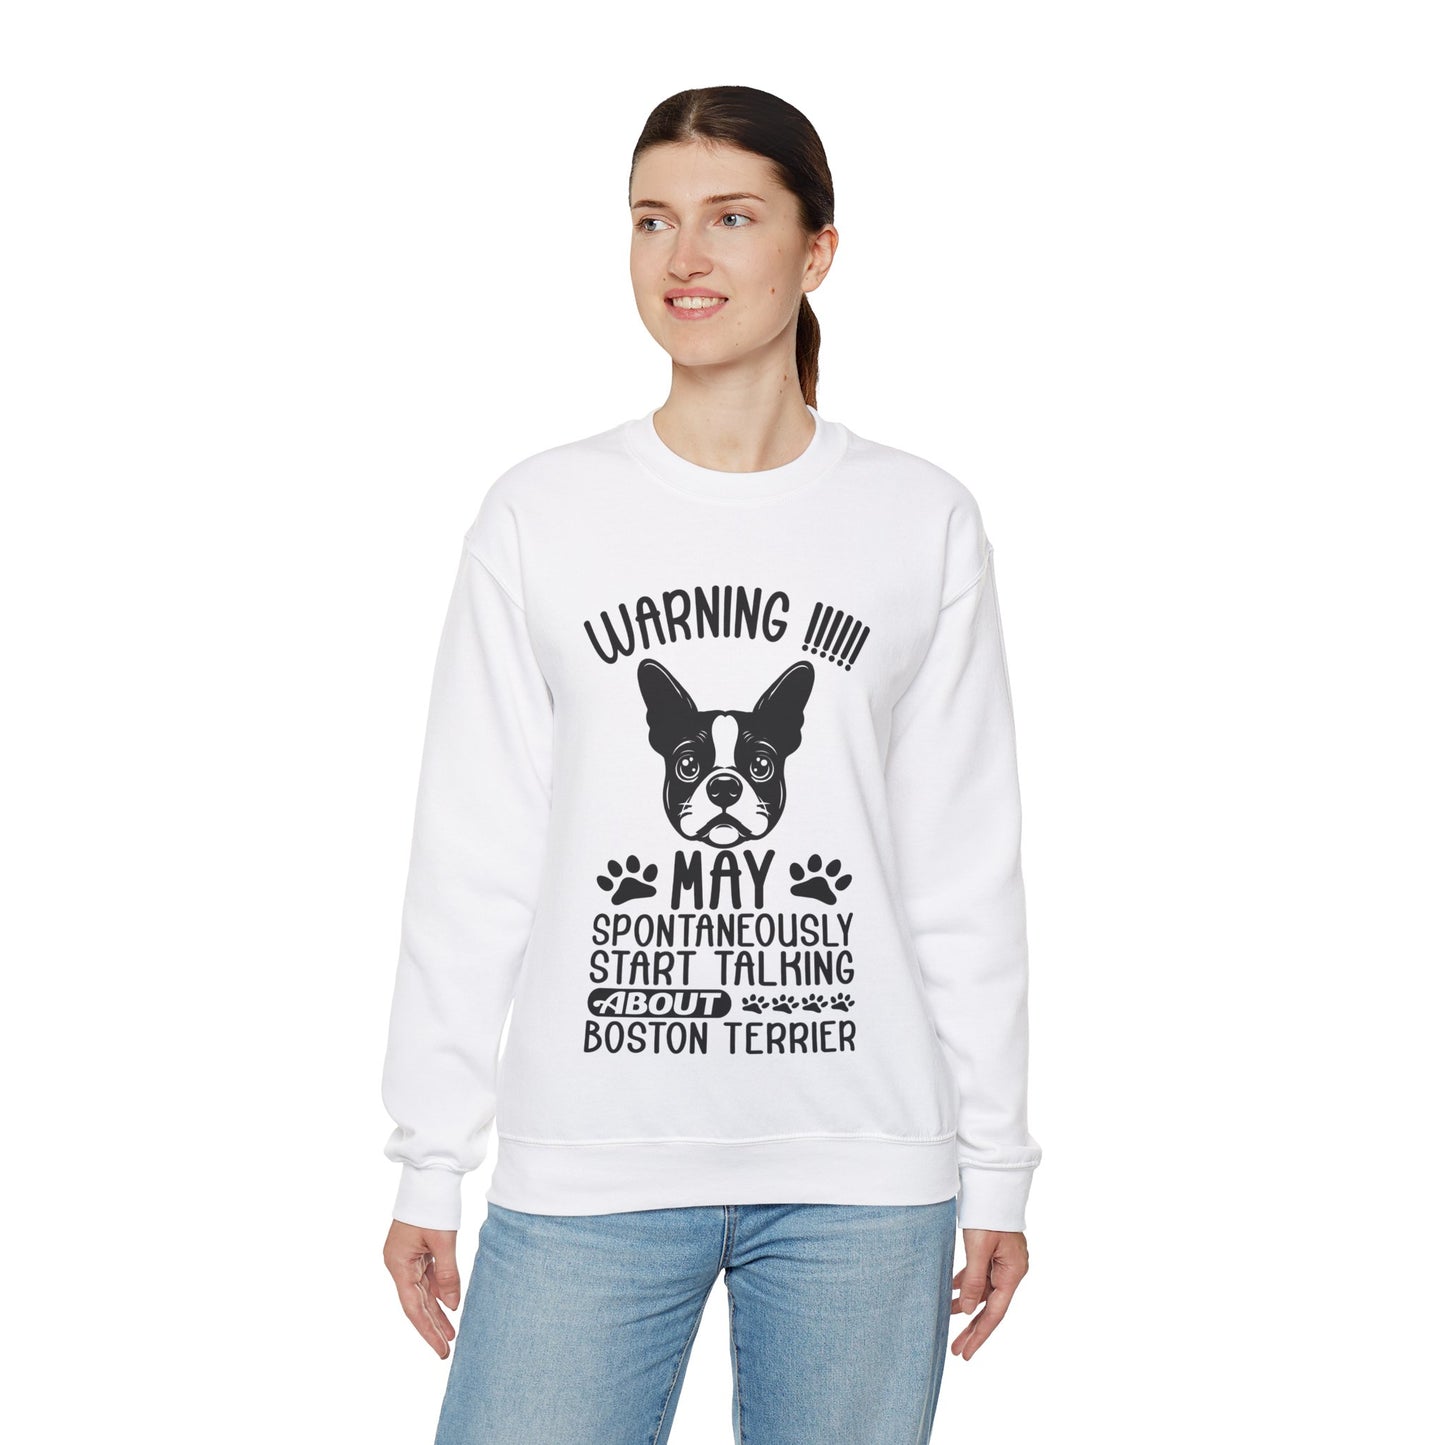 Bullseye  - Unisex Sweatshirt for Boston Terrier lovers